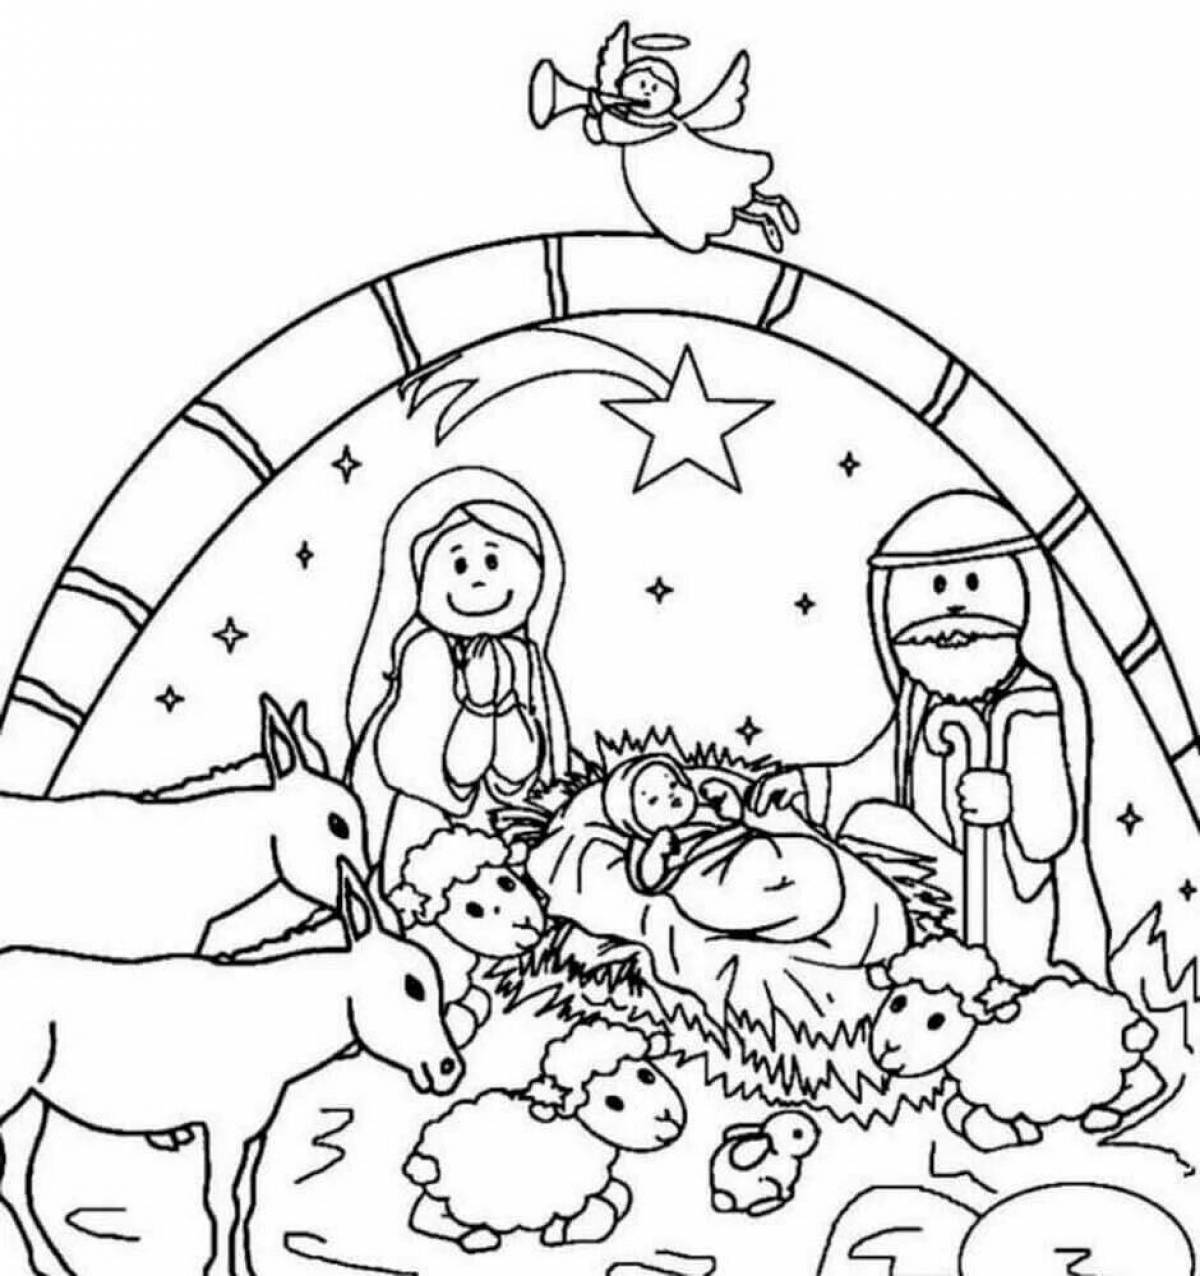 Coloring book sublime nativity scene